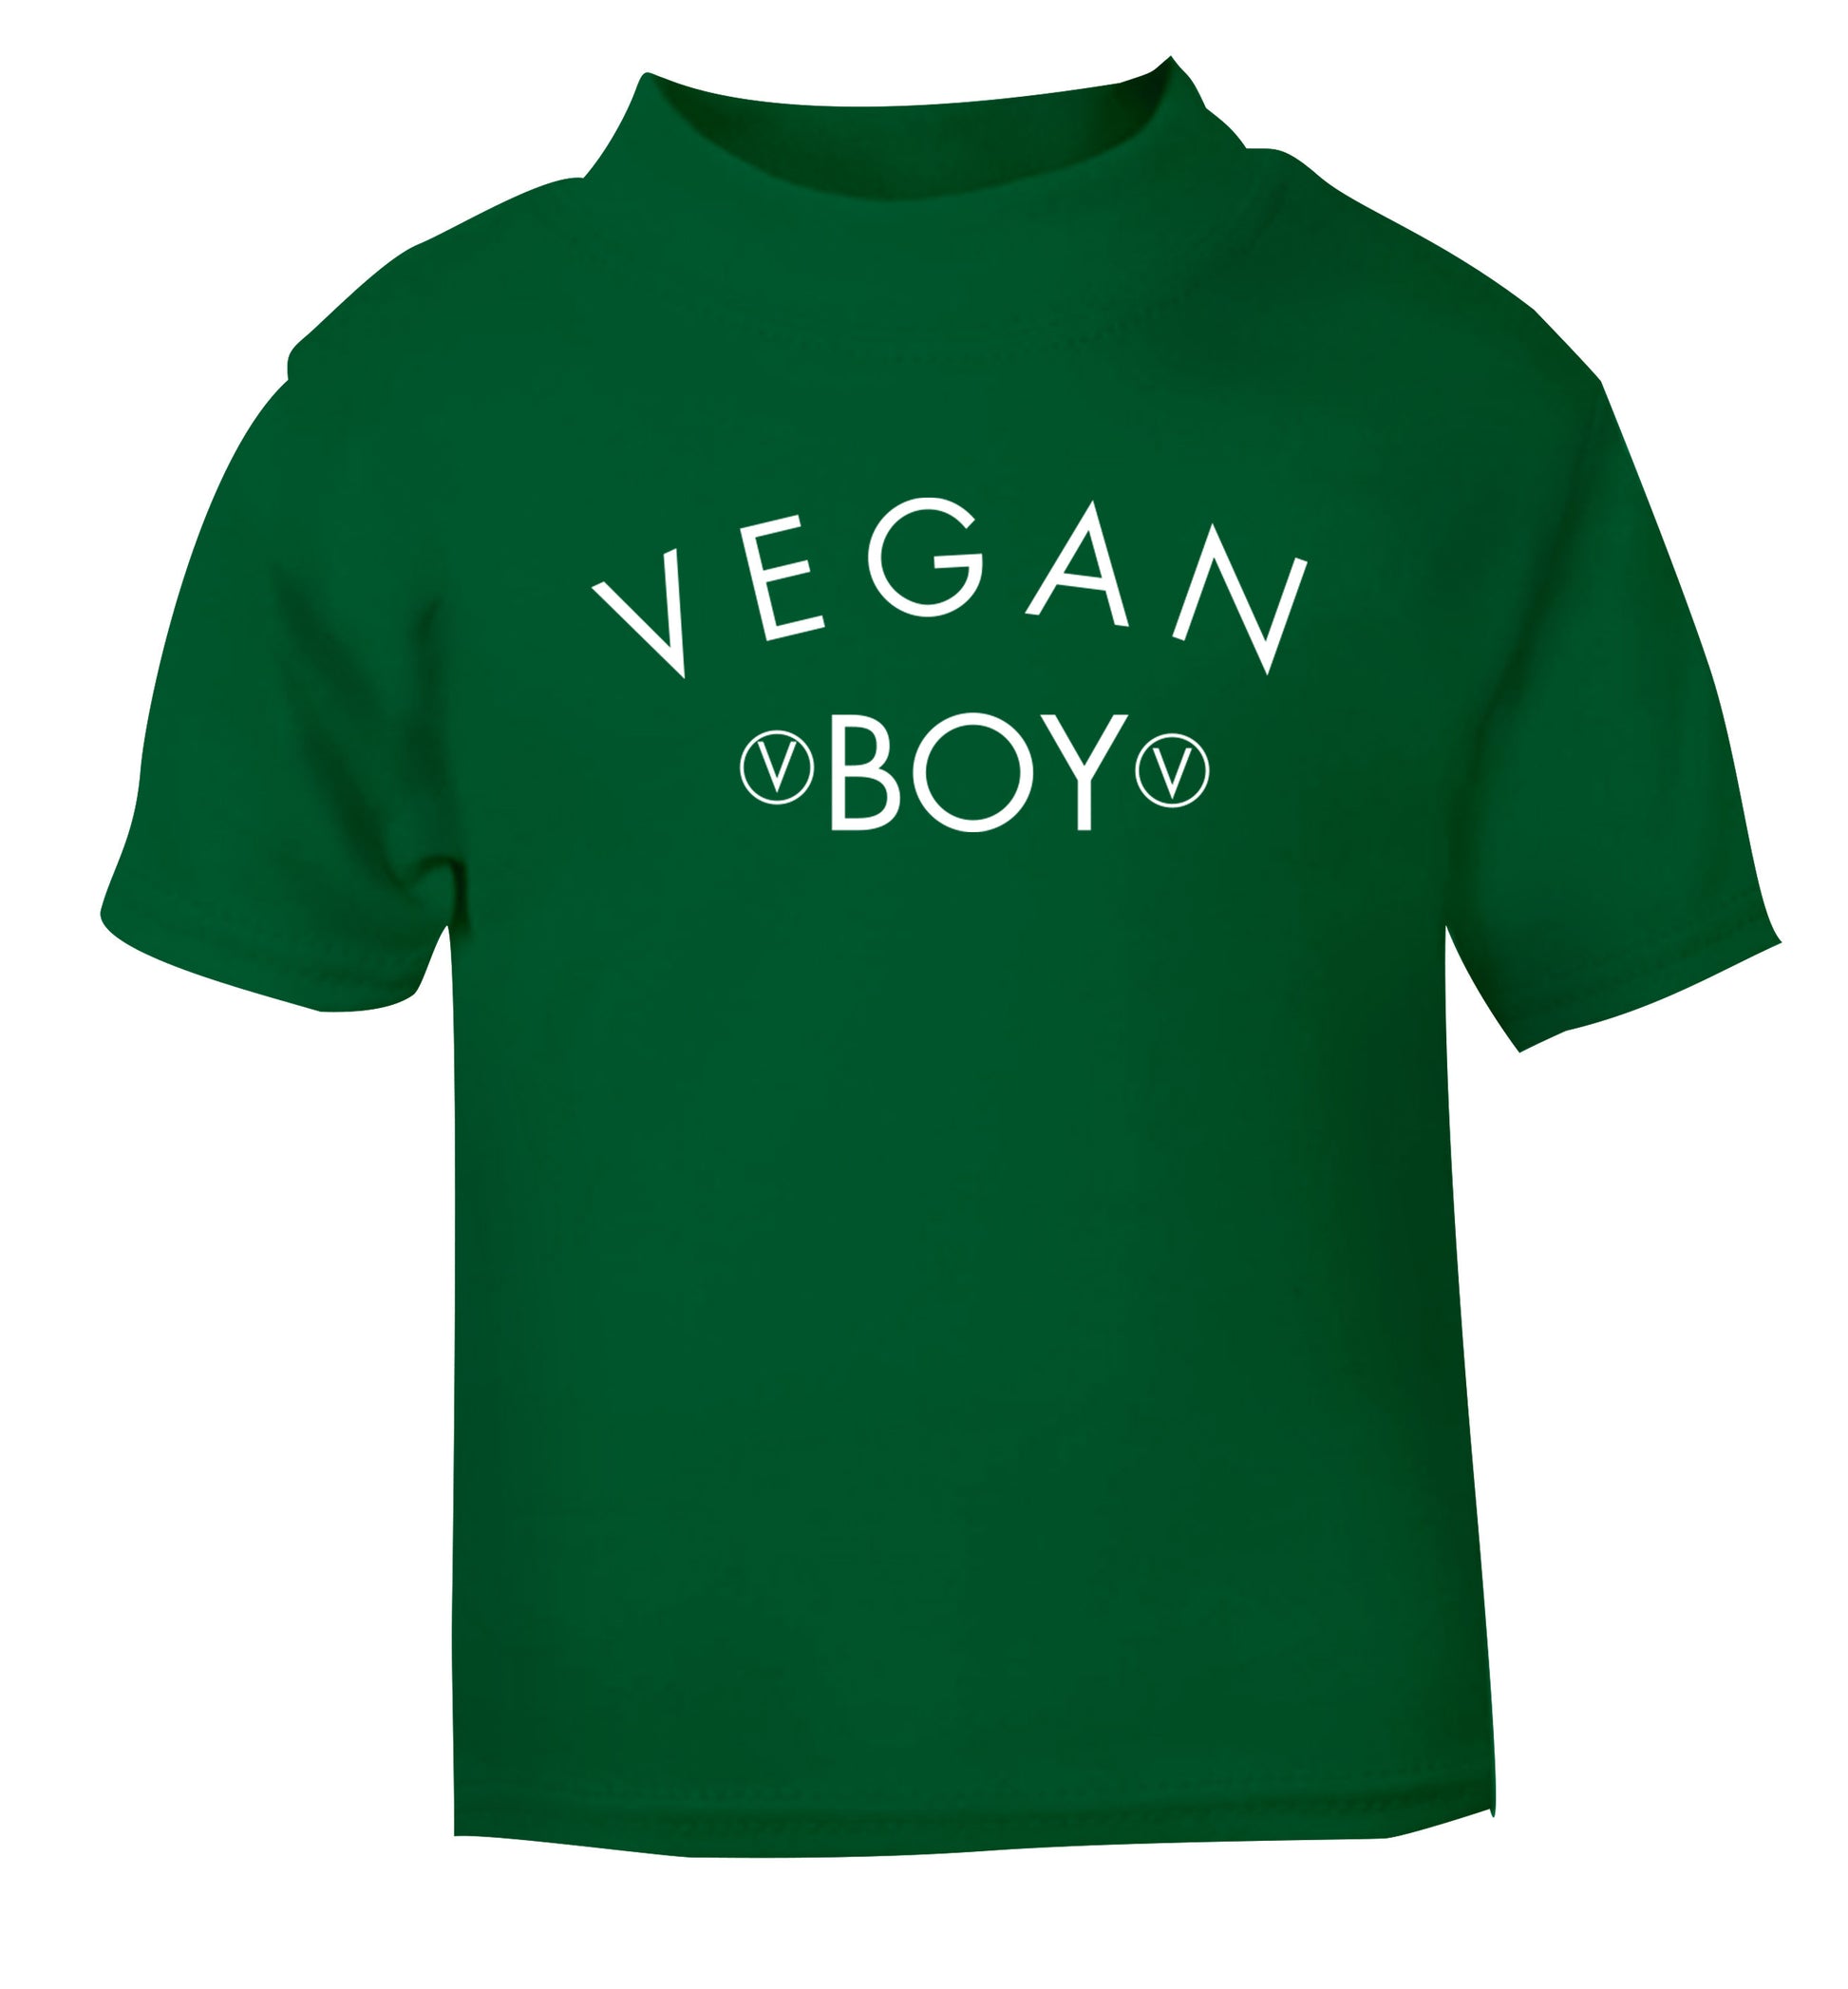 Vegan boy green Baby Toddler Tshirt 2 Years